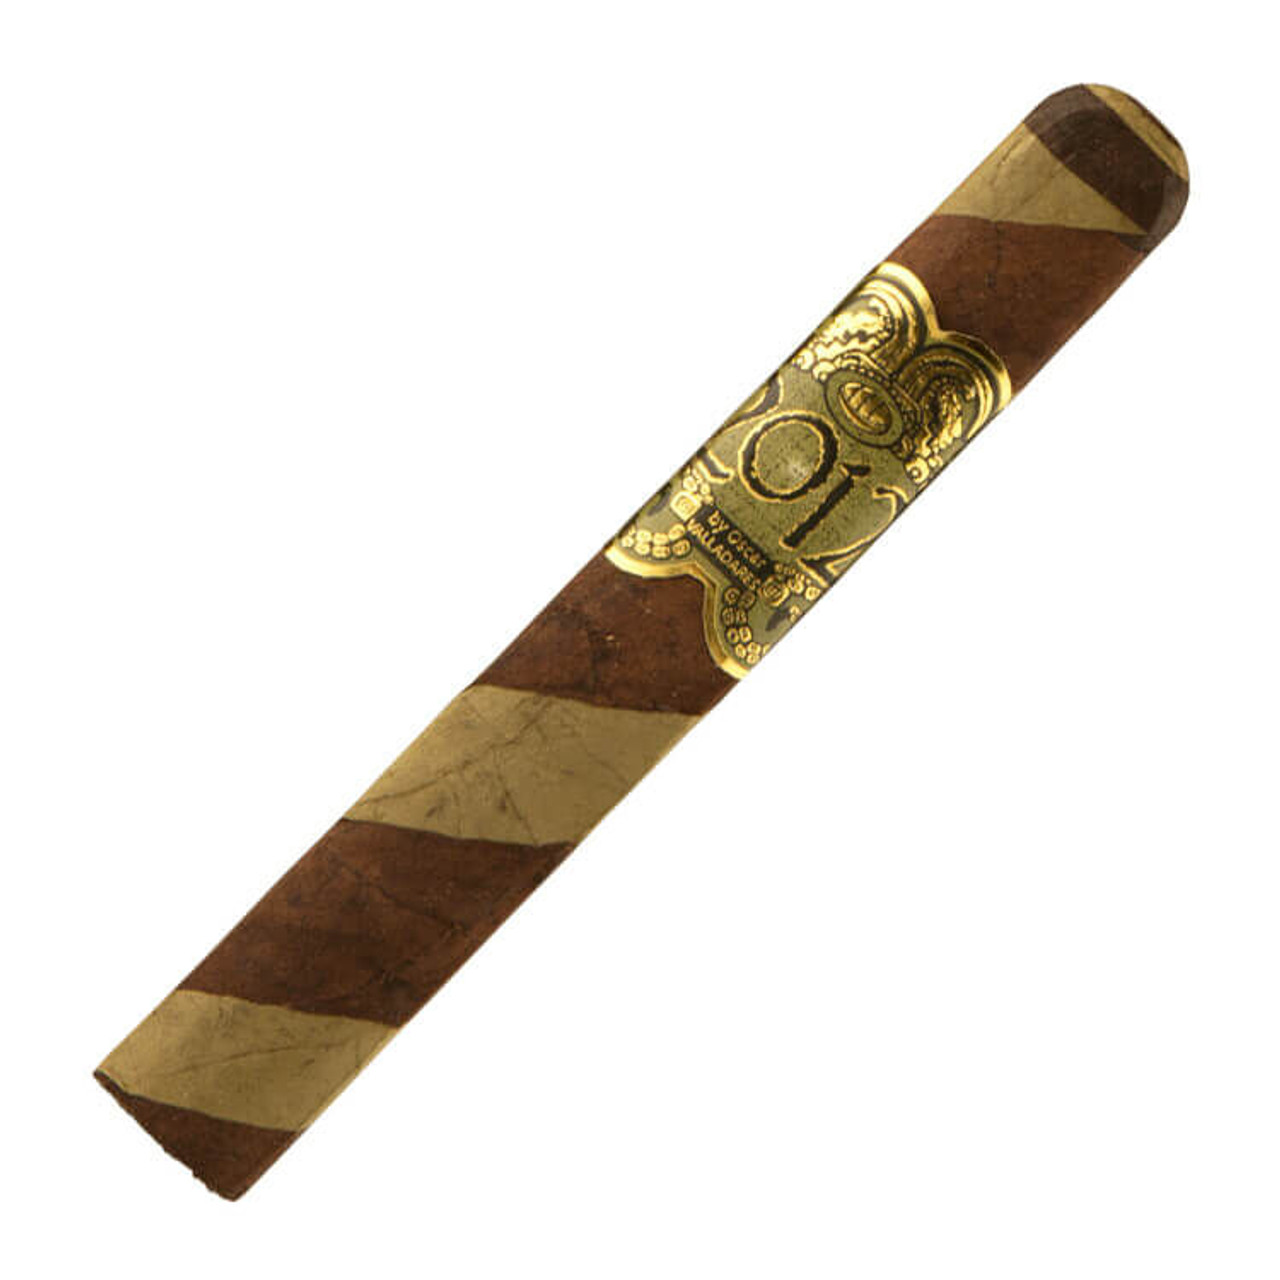 Oscar Valladares 2012 Barber Pole Toro Cigars - 6.0 x 52 (Box of 10)